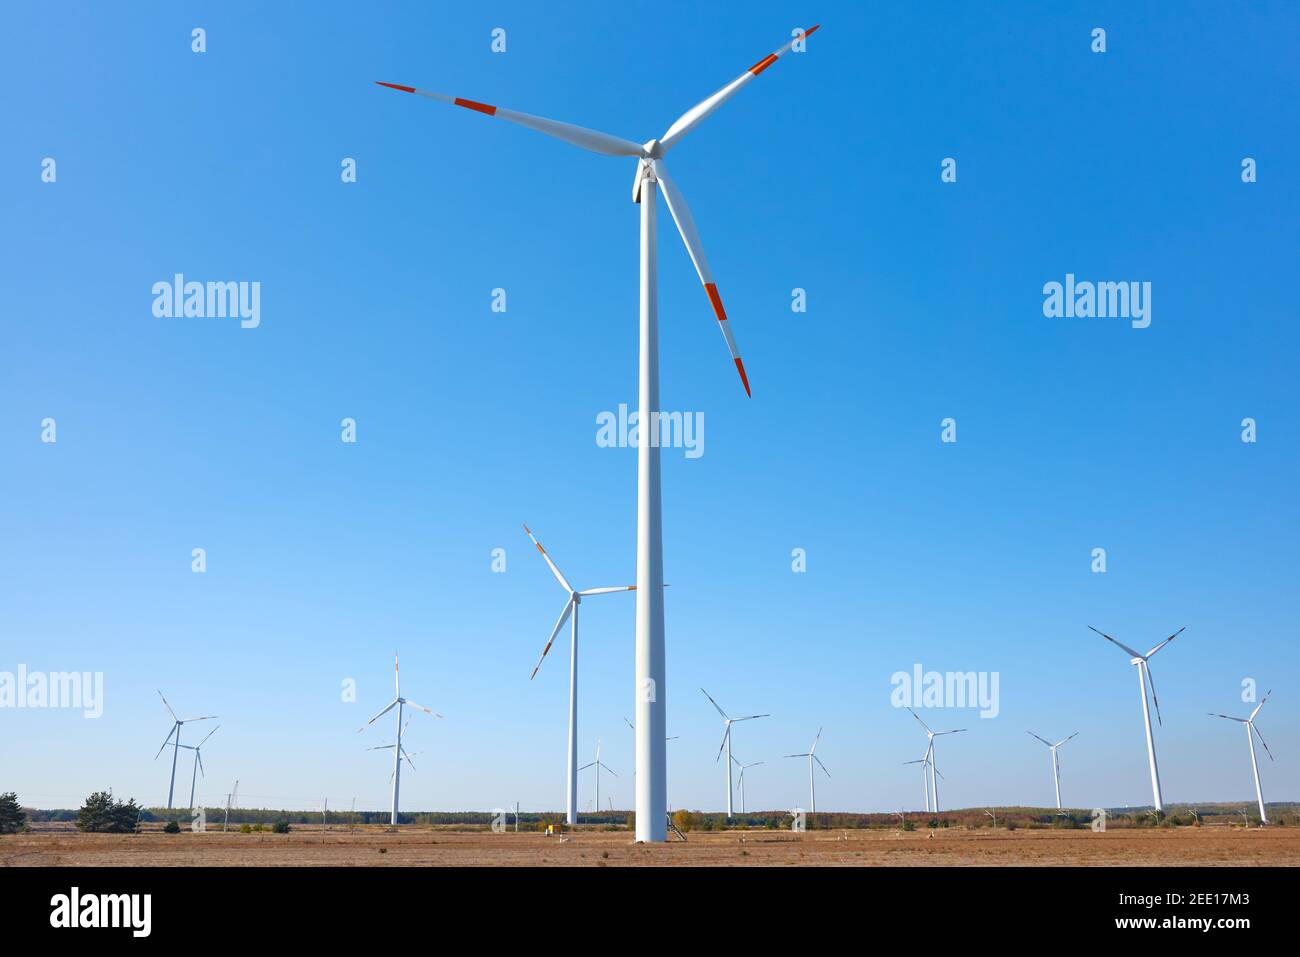 Bild von einem Windturbinenpark am blauen Himmel. Stockfoto